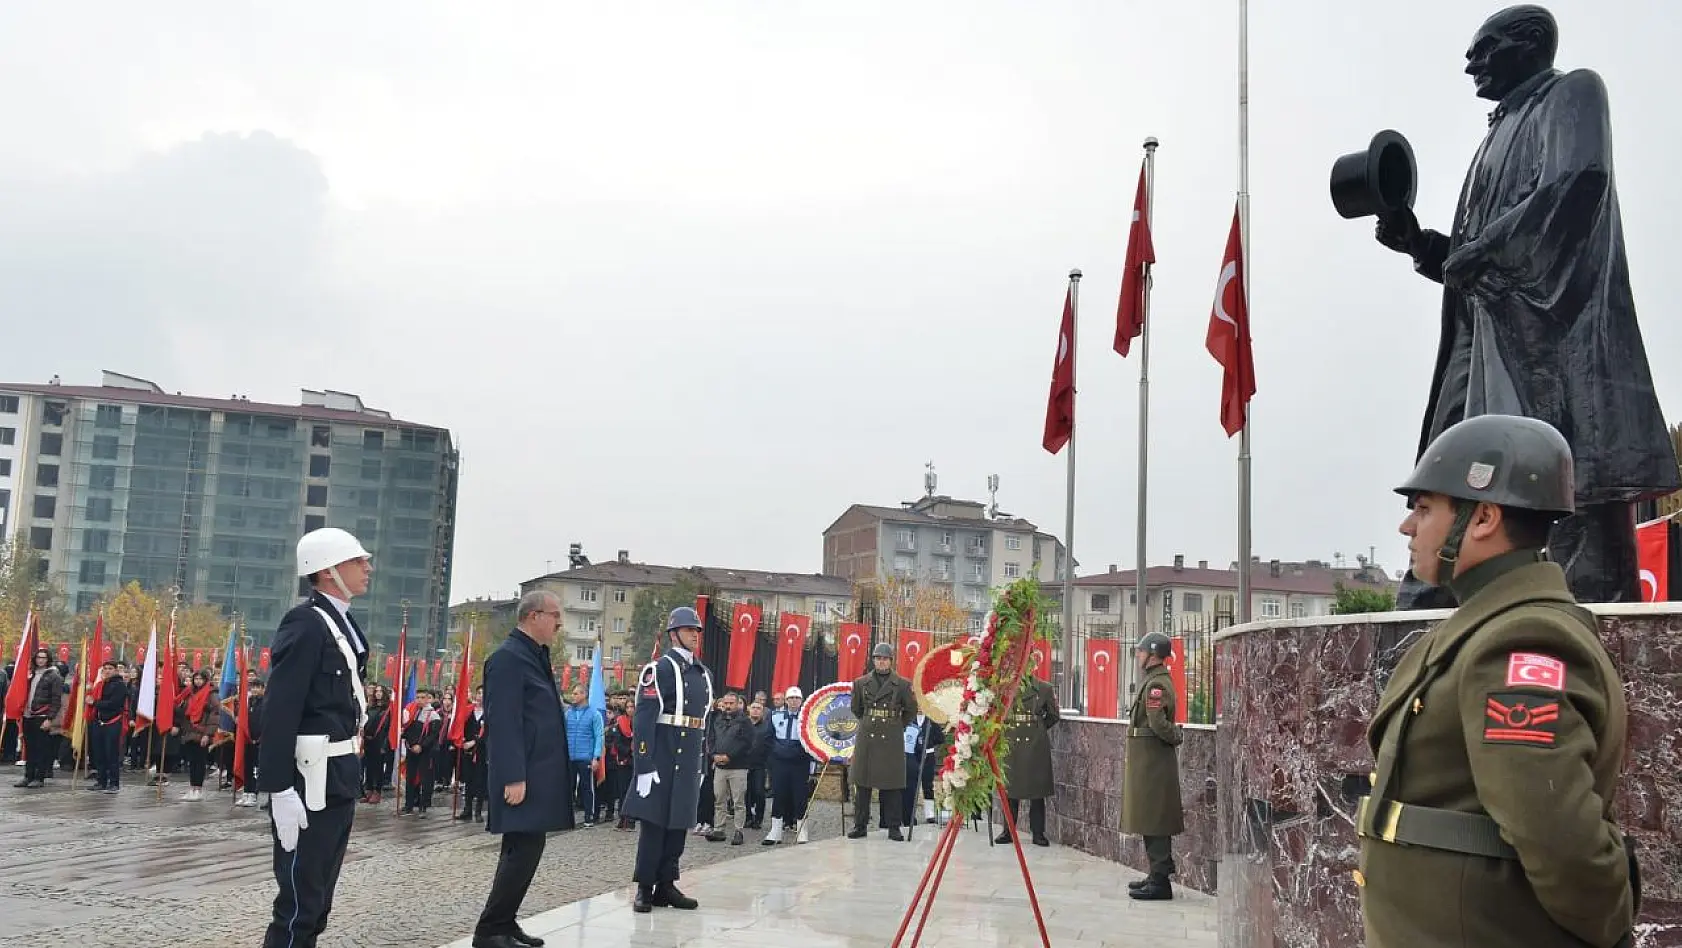 Elazığ'da 10 Kasım Atatürk'ü Anma Günü töreni